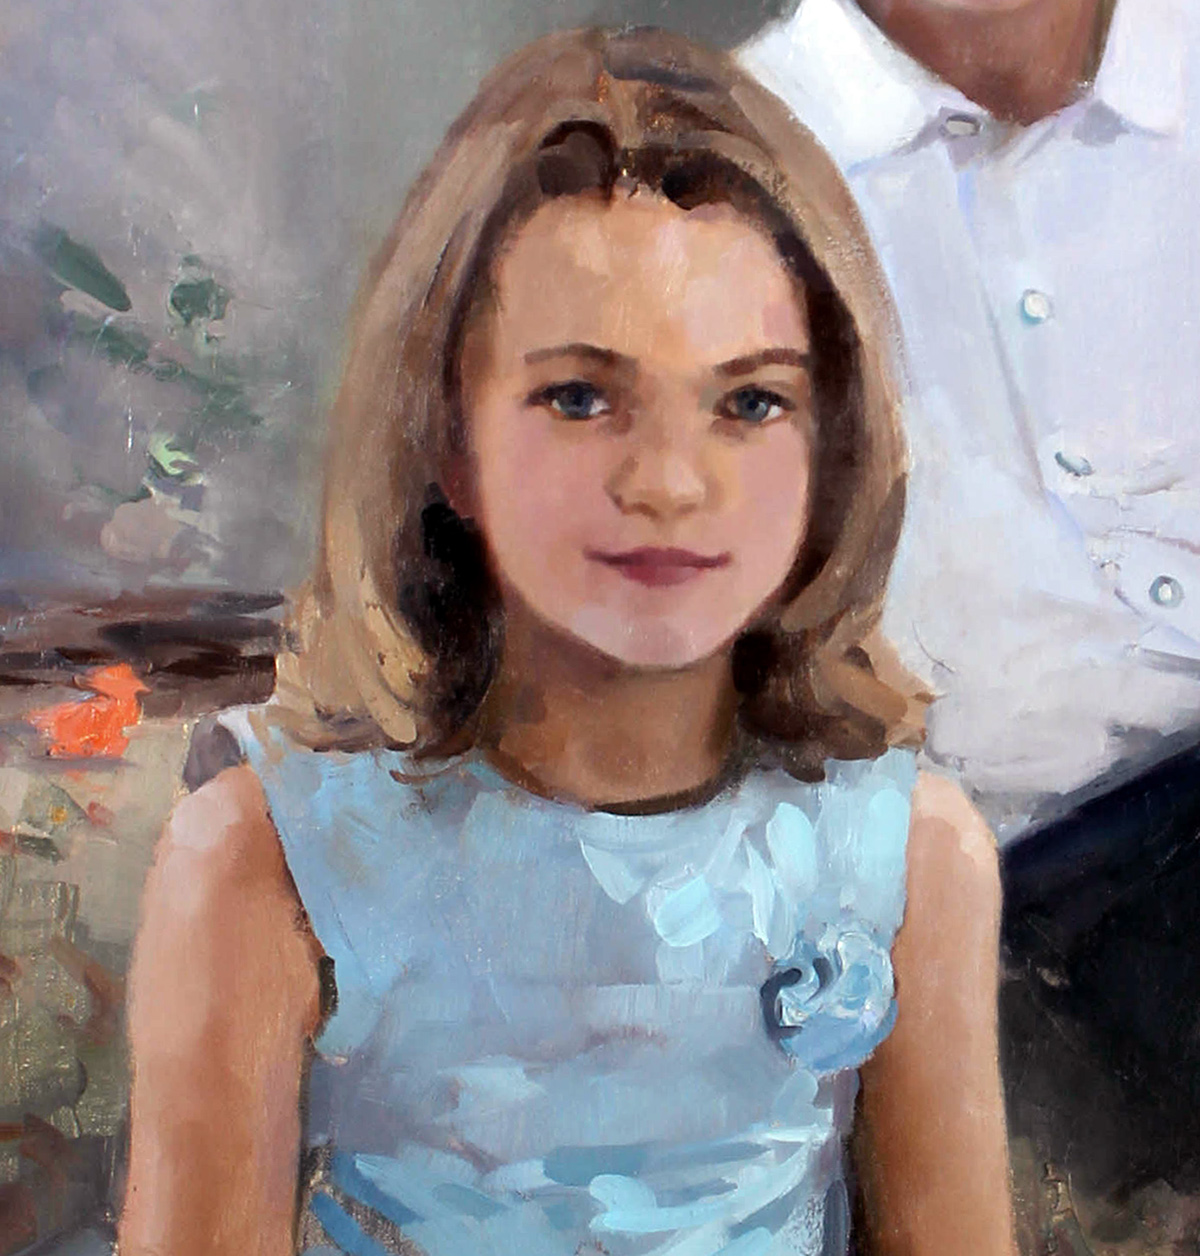 portrait children hands Realism impressionism impressionist